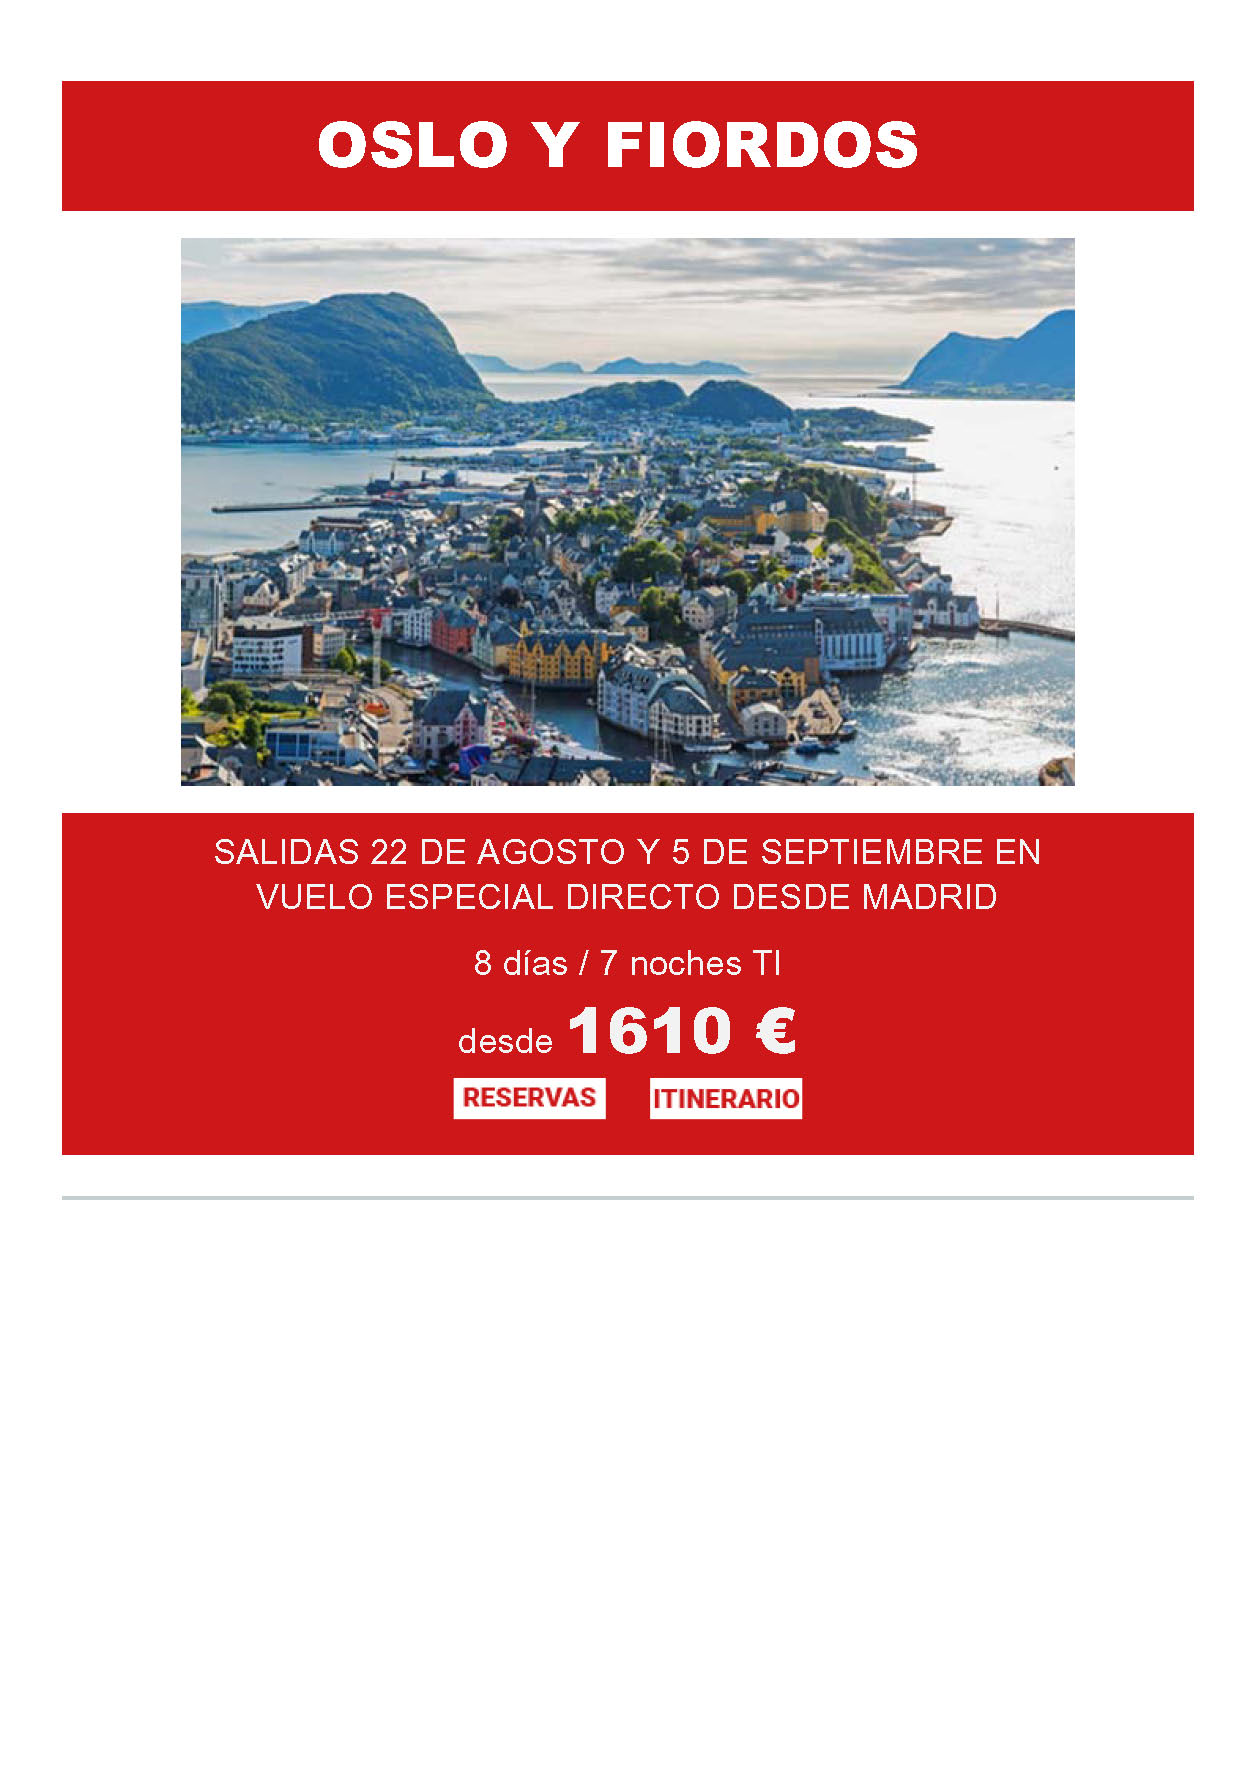 Oferta Travelplan Ahorro Oslo y Fiordos 8 dias Todo Incluido salidas Agosto Septiembre 2022 vuelo especial directo desde Madrid